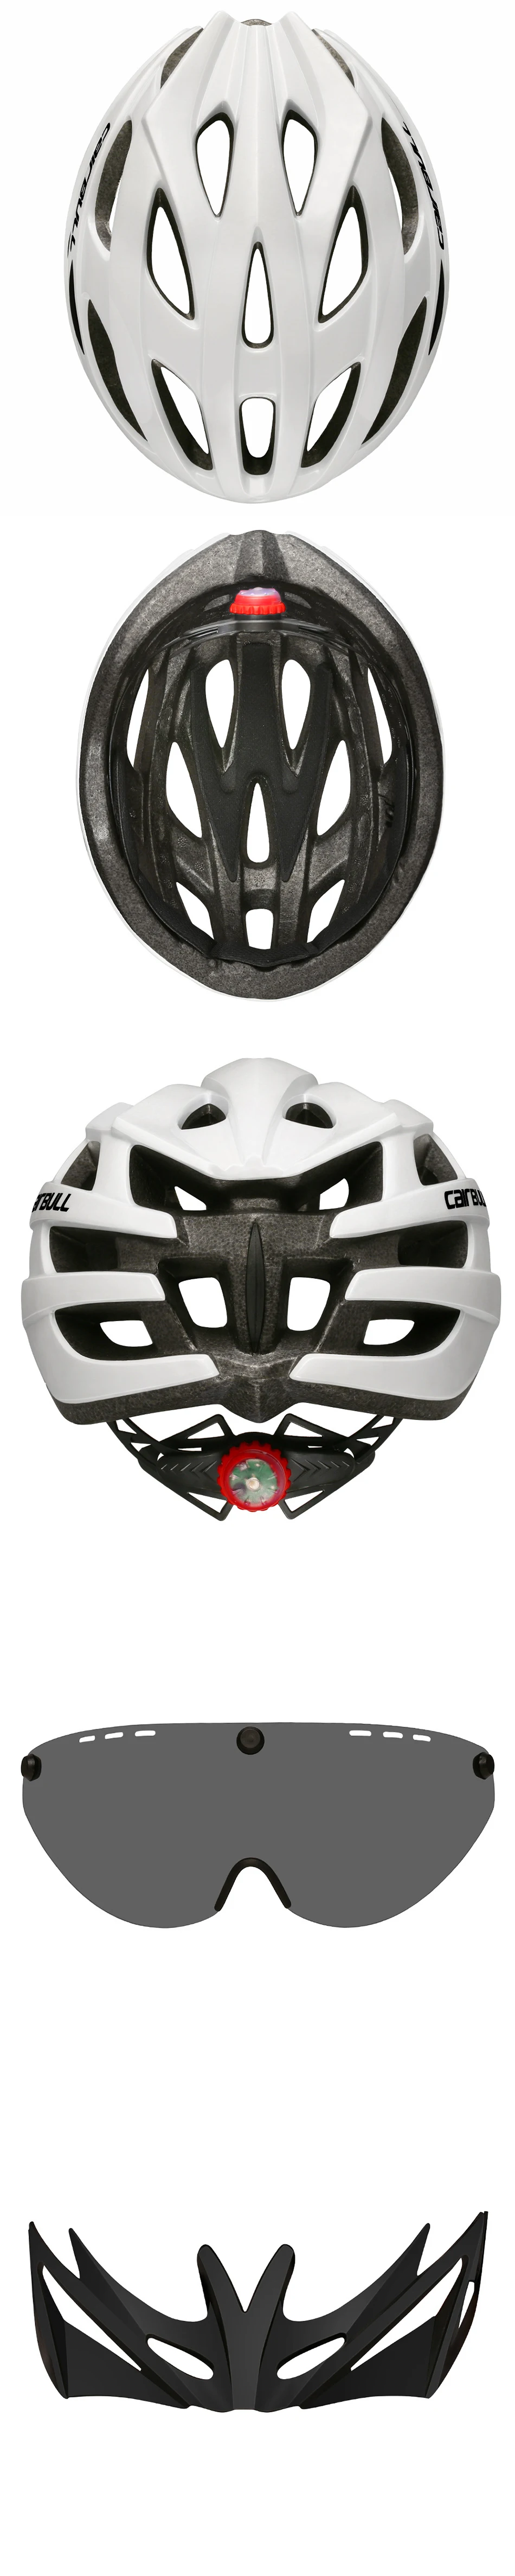 CAIRBULL дорожный велосипед шлем защитные очки шлем обтекаемой формы с светодиодный фонарь MTB велосипедные шлемы велосипедный шлем hombre велосипедные шлемы